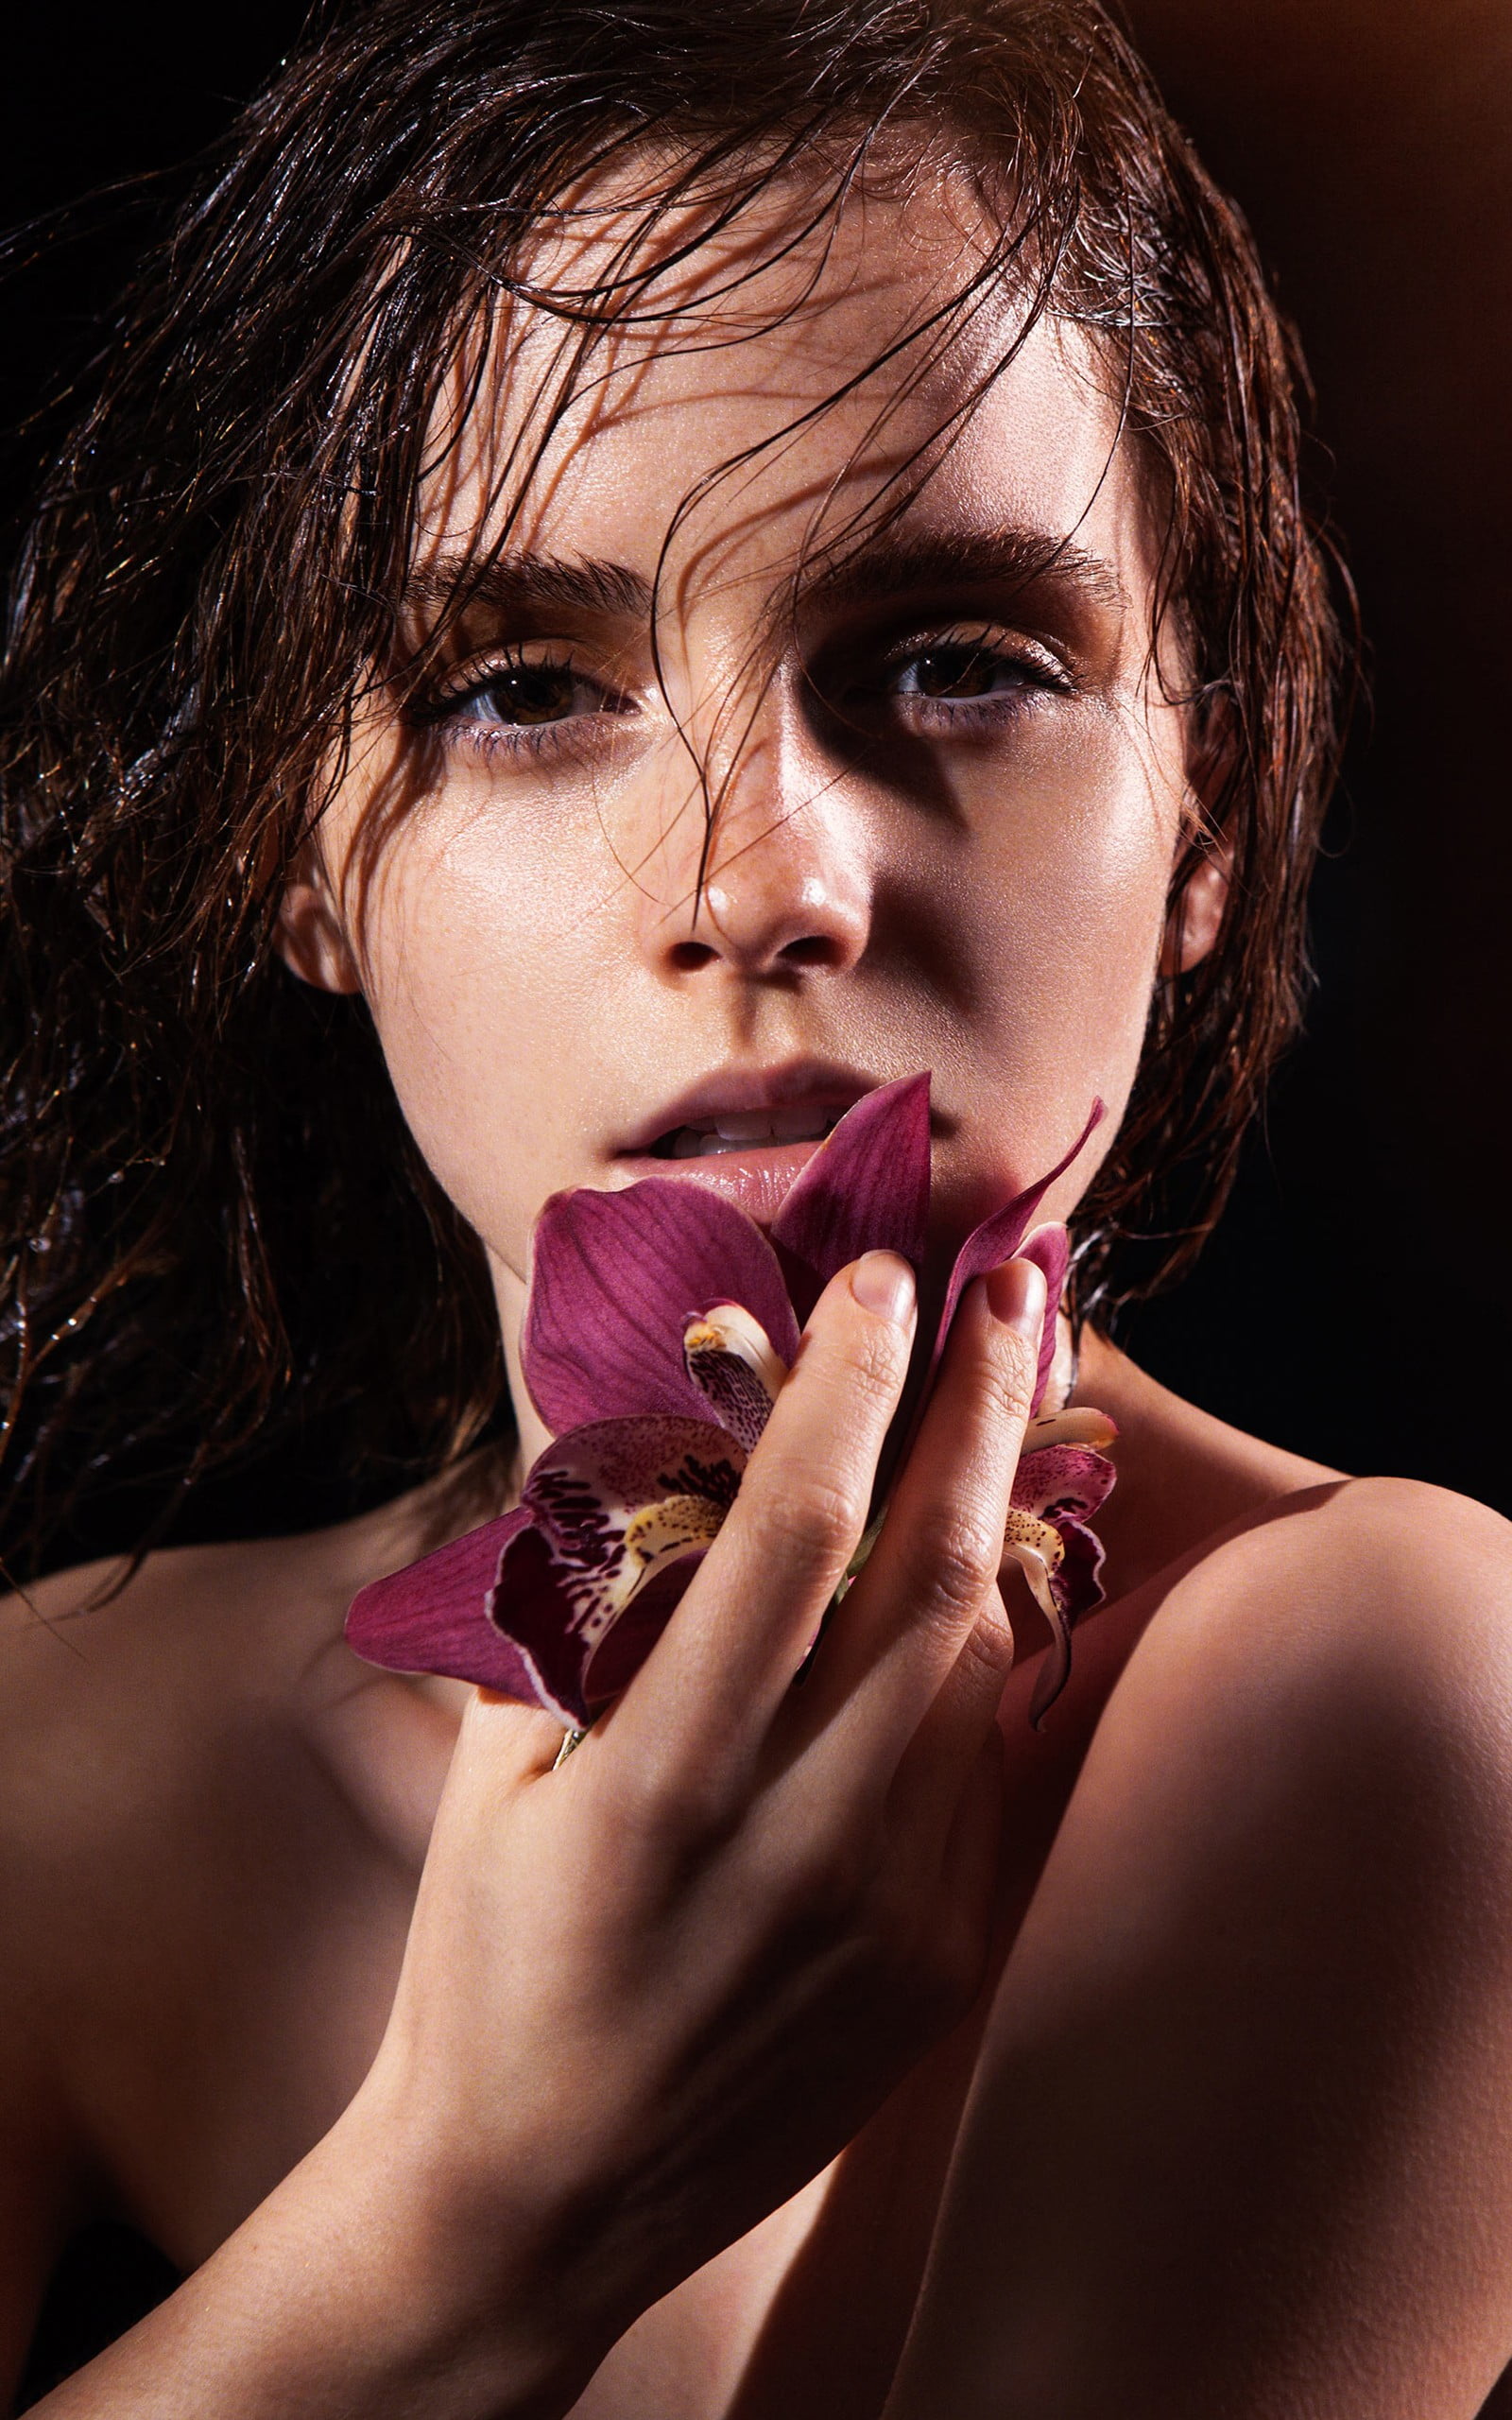 Emma Watson, actress, celebrity, women, portrait display, beauty